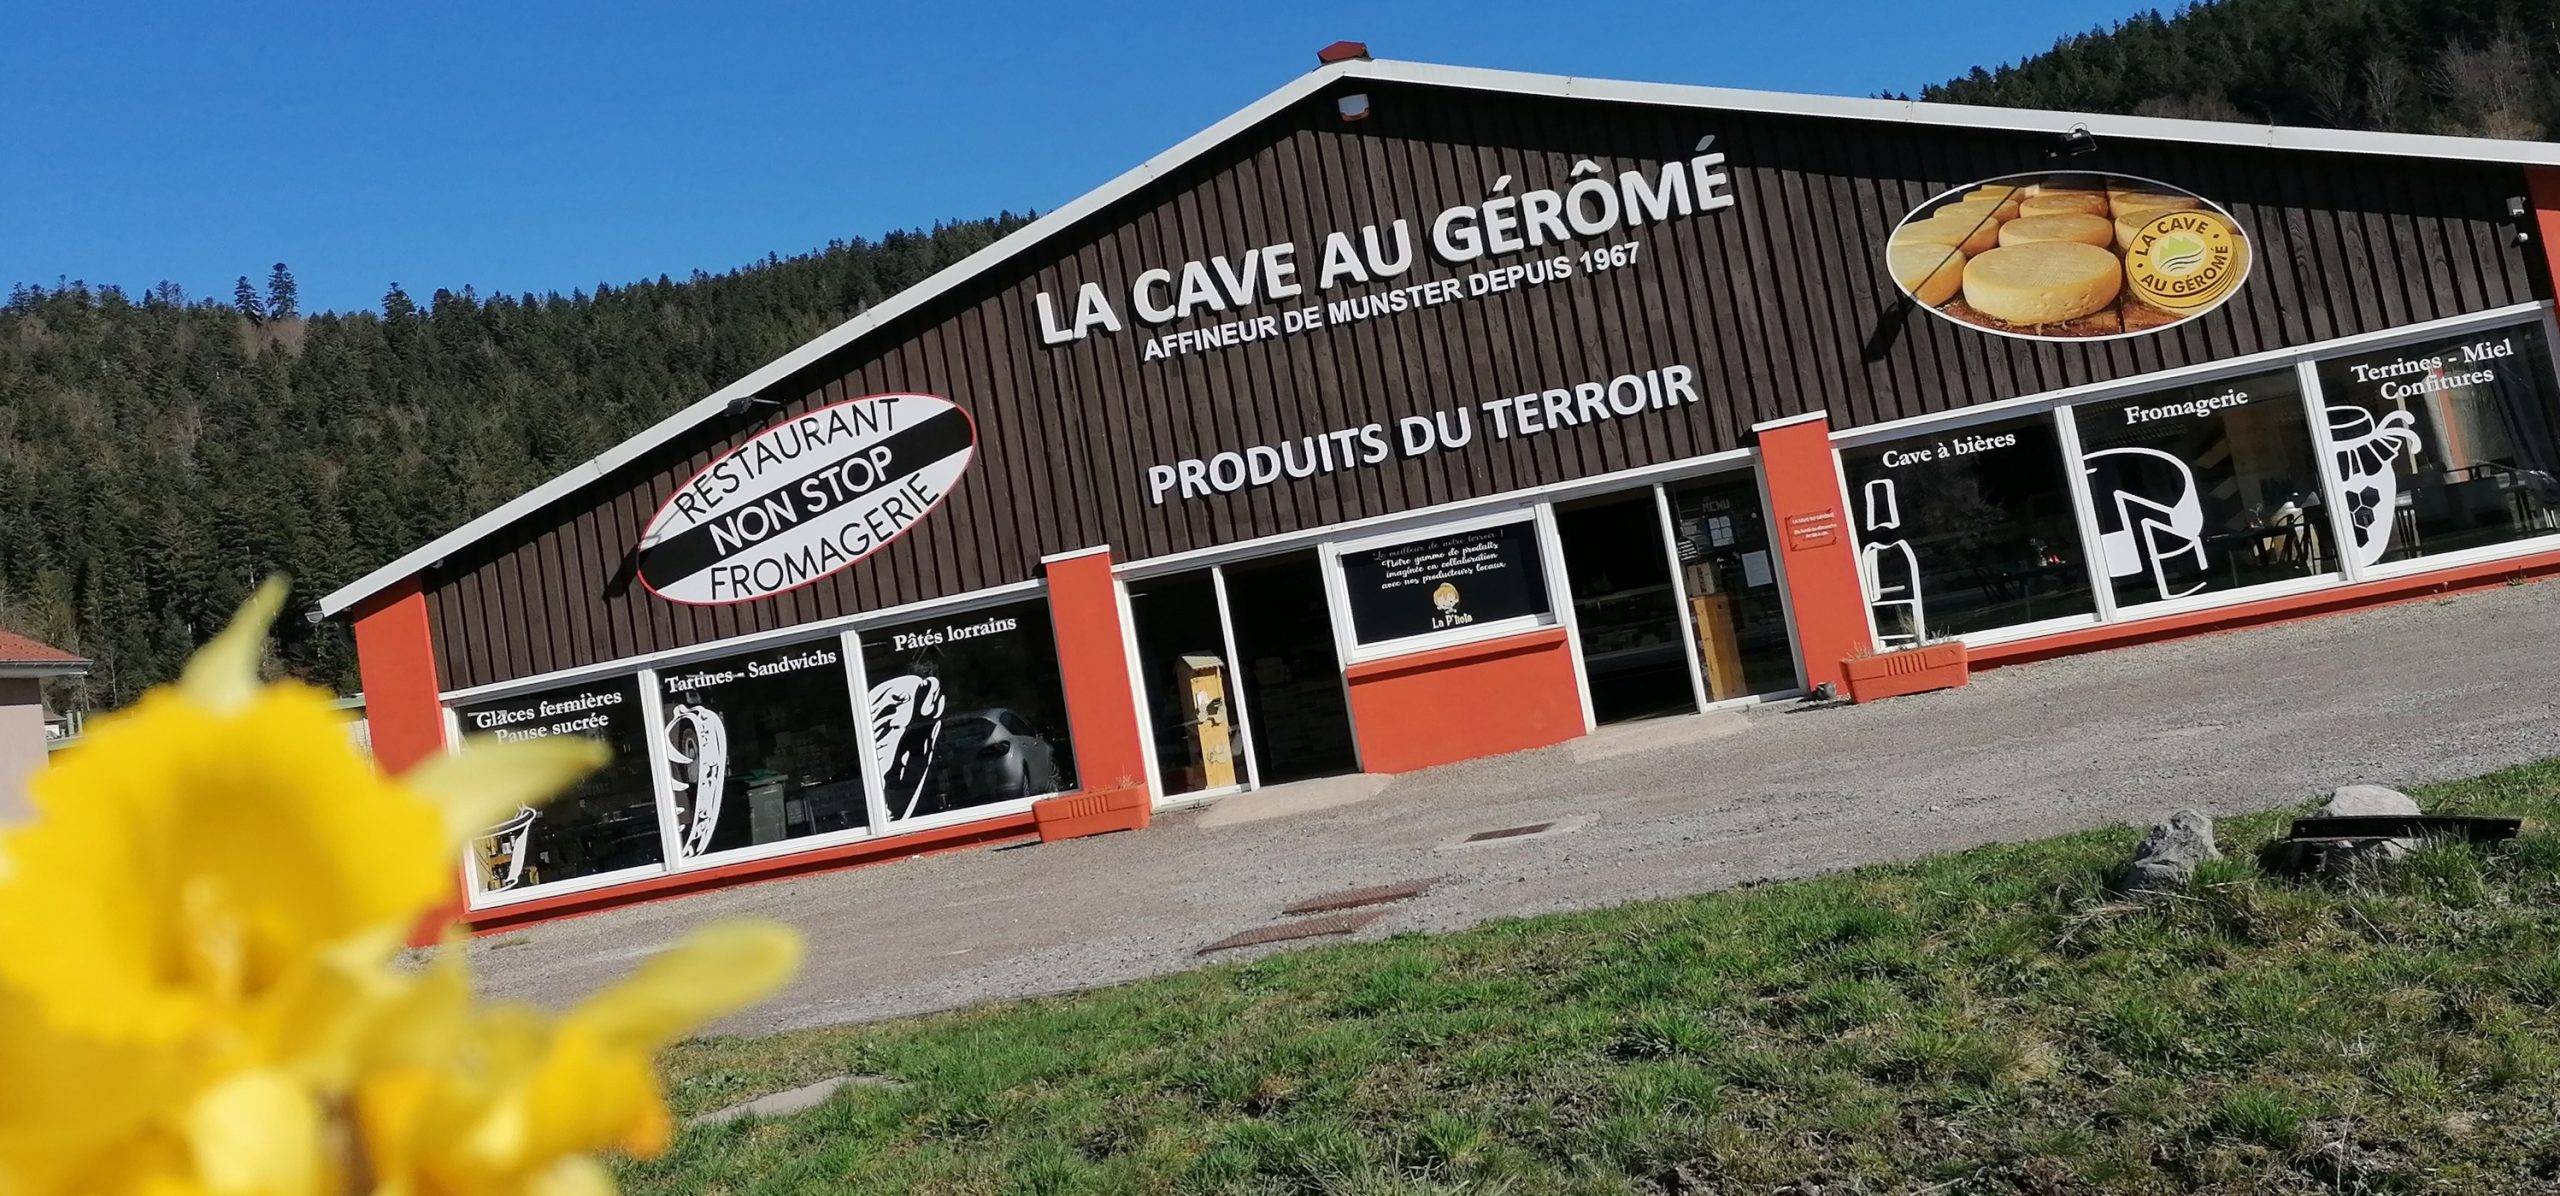 Cave au géromé Tholy Vosges